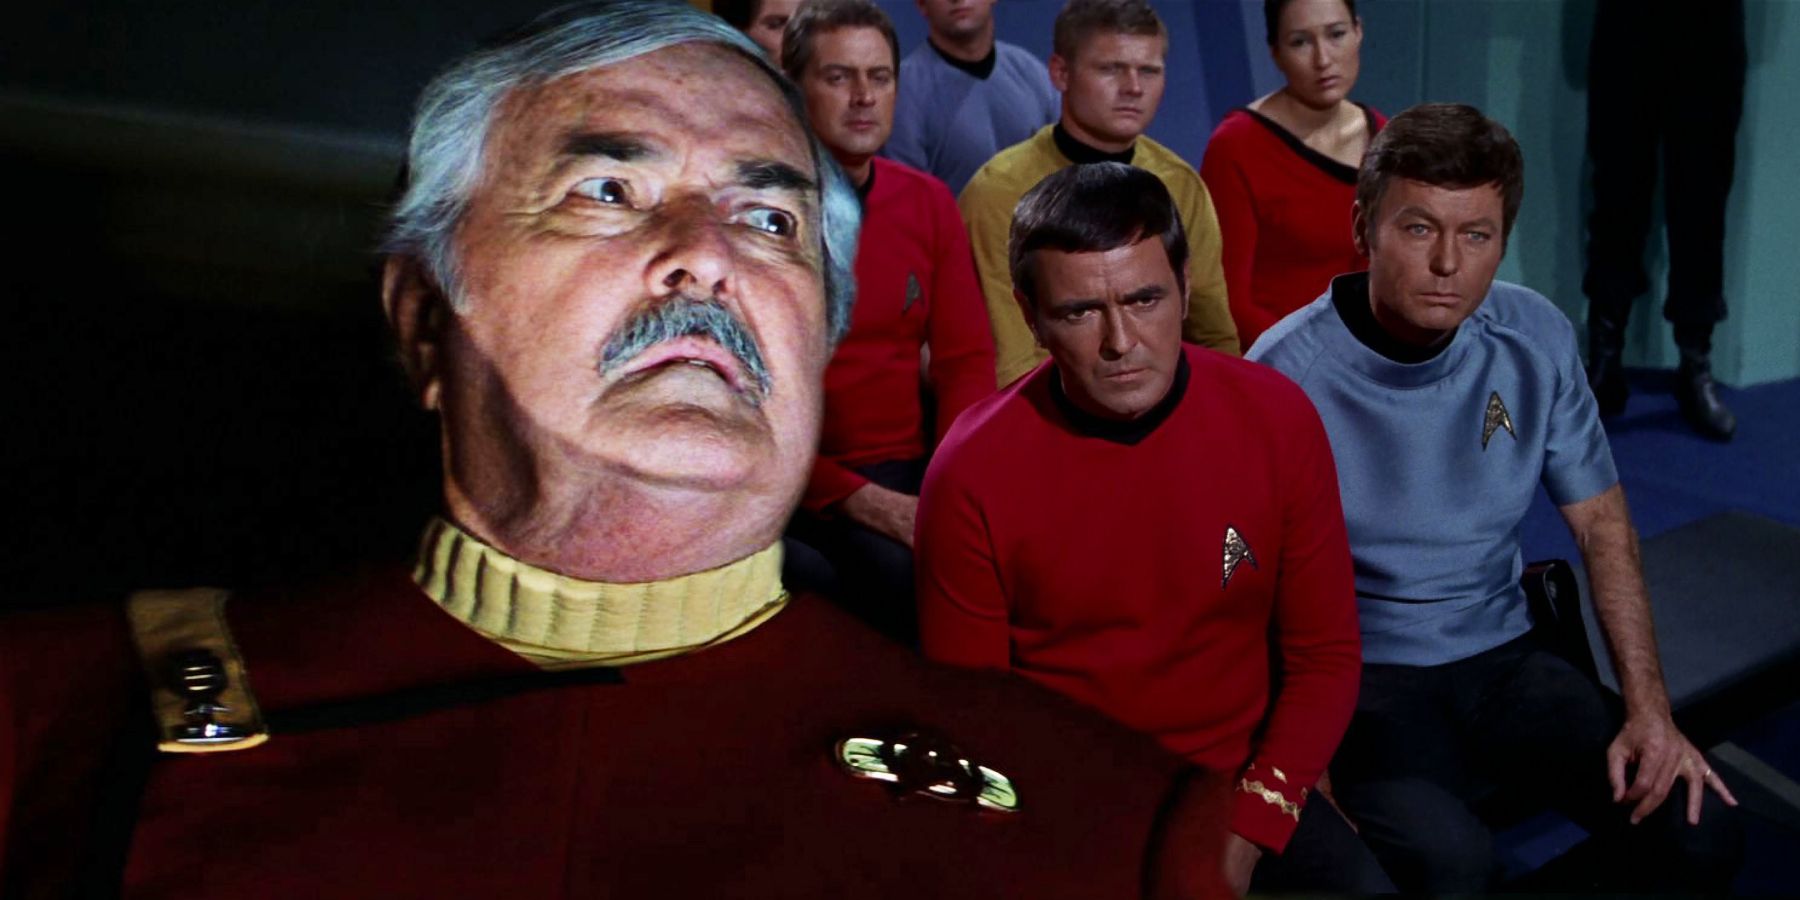 La nueva arma asesina de Dioses de Star Trek podría destruir el legado de Scotty